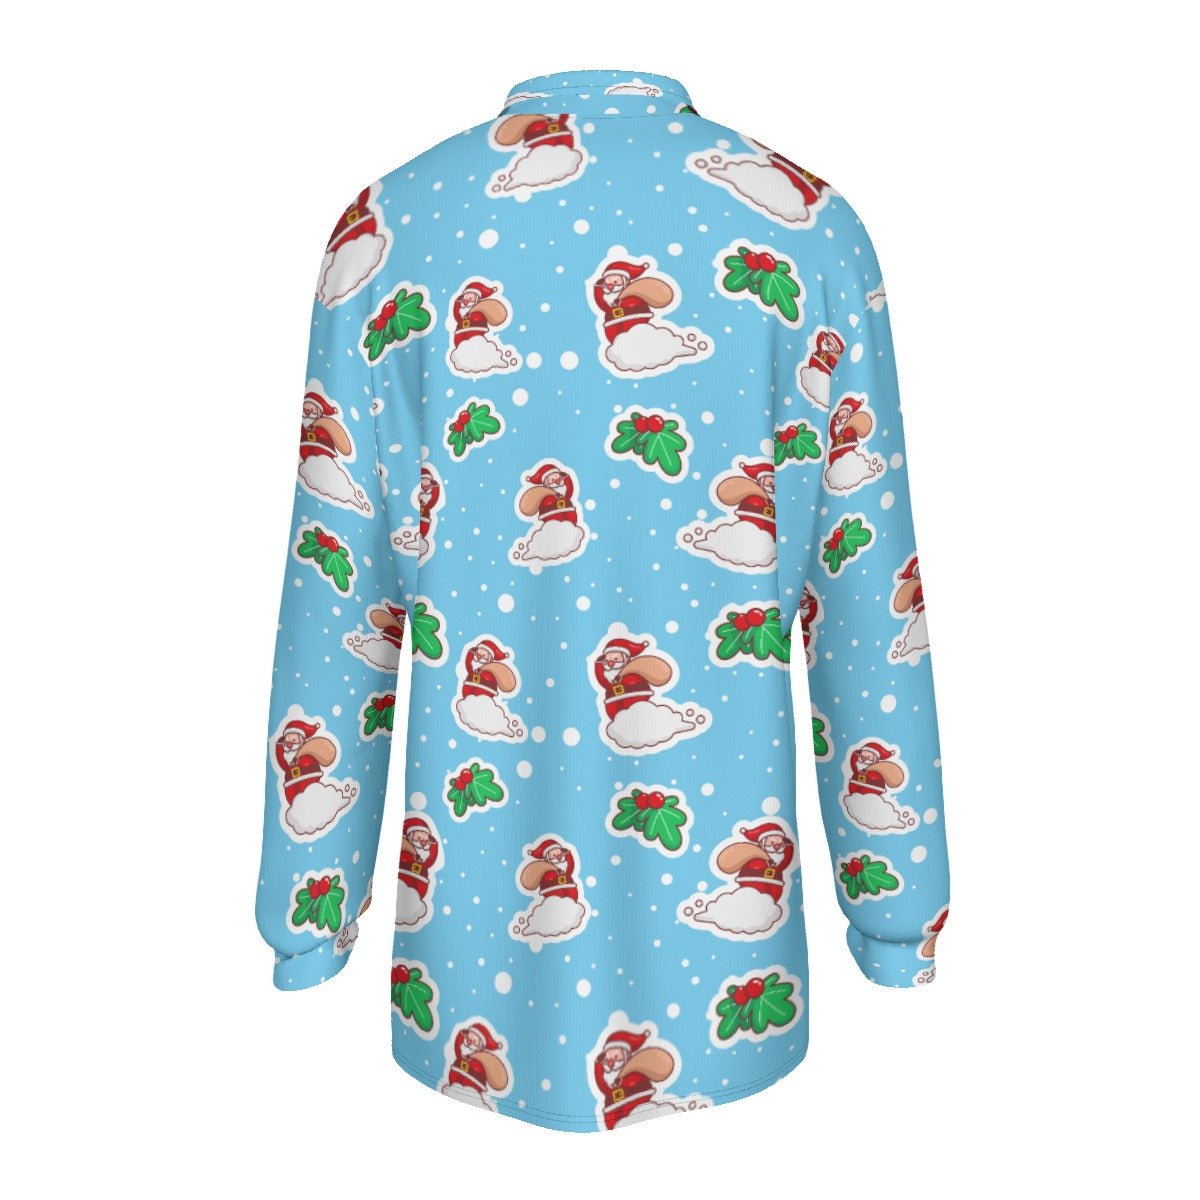 Men's Long Sleeve Christmas Polo Shirt - Santa Cloud - Festive Style